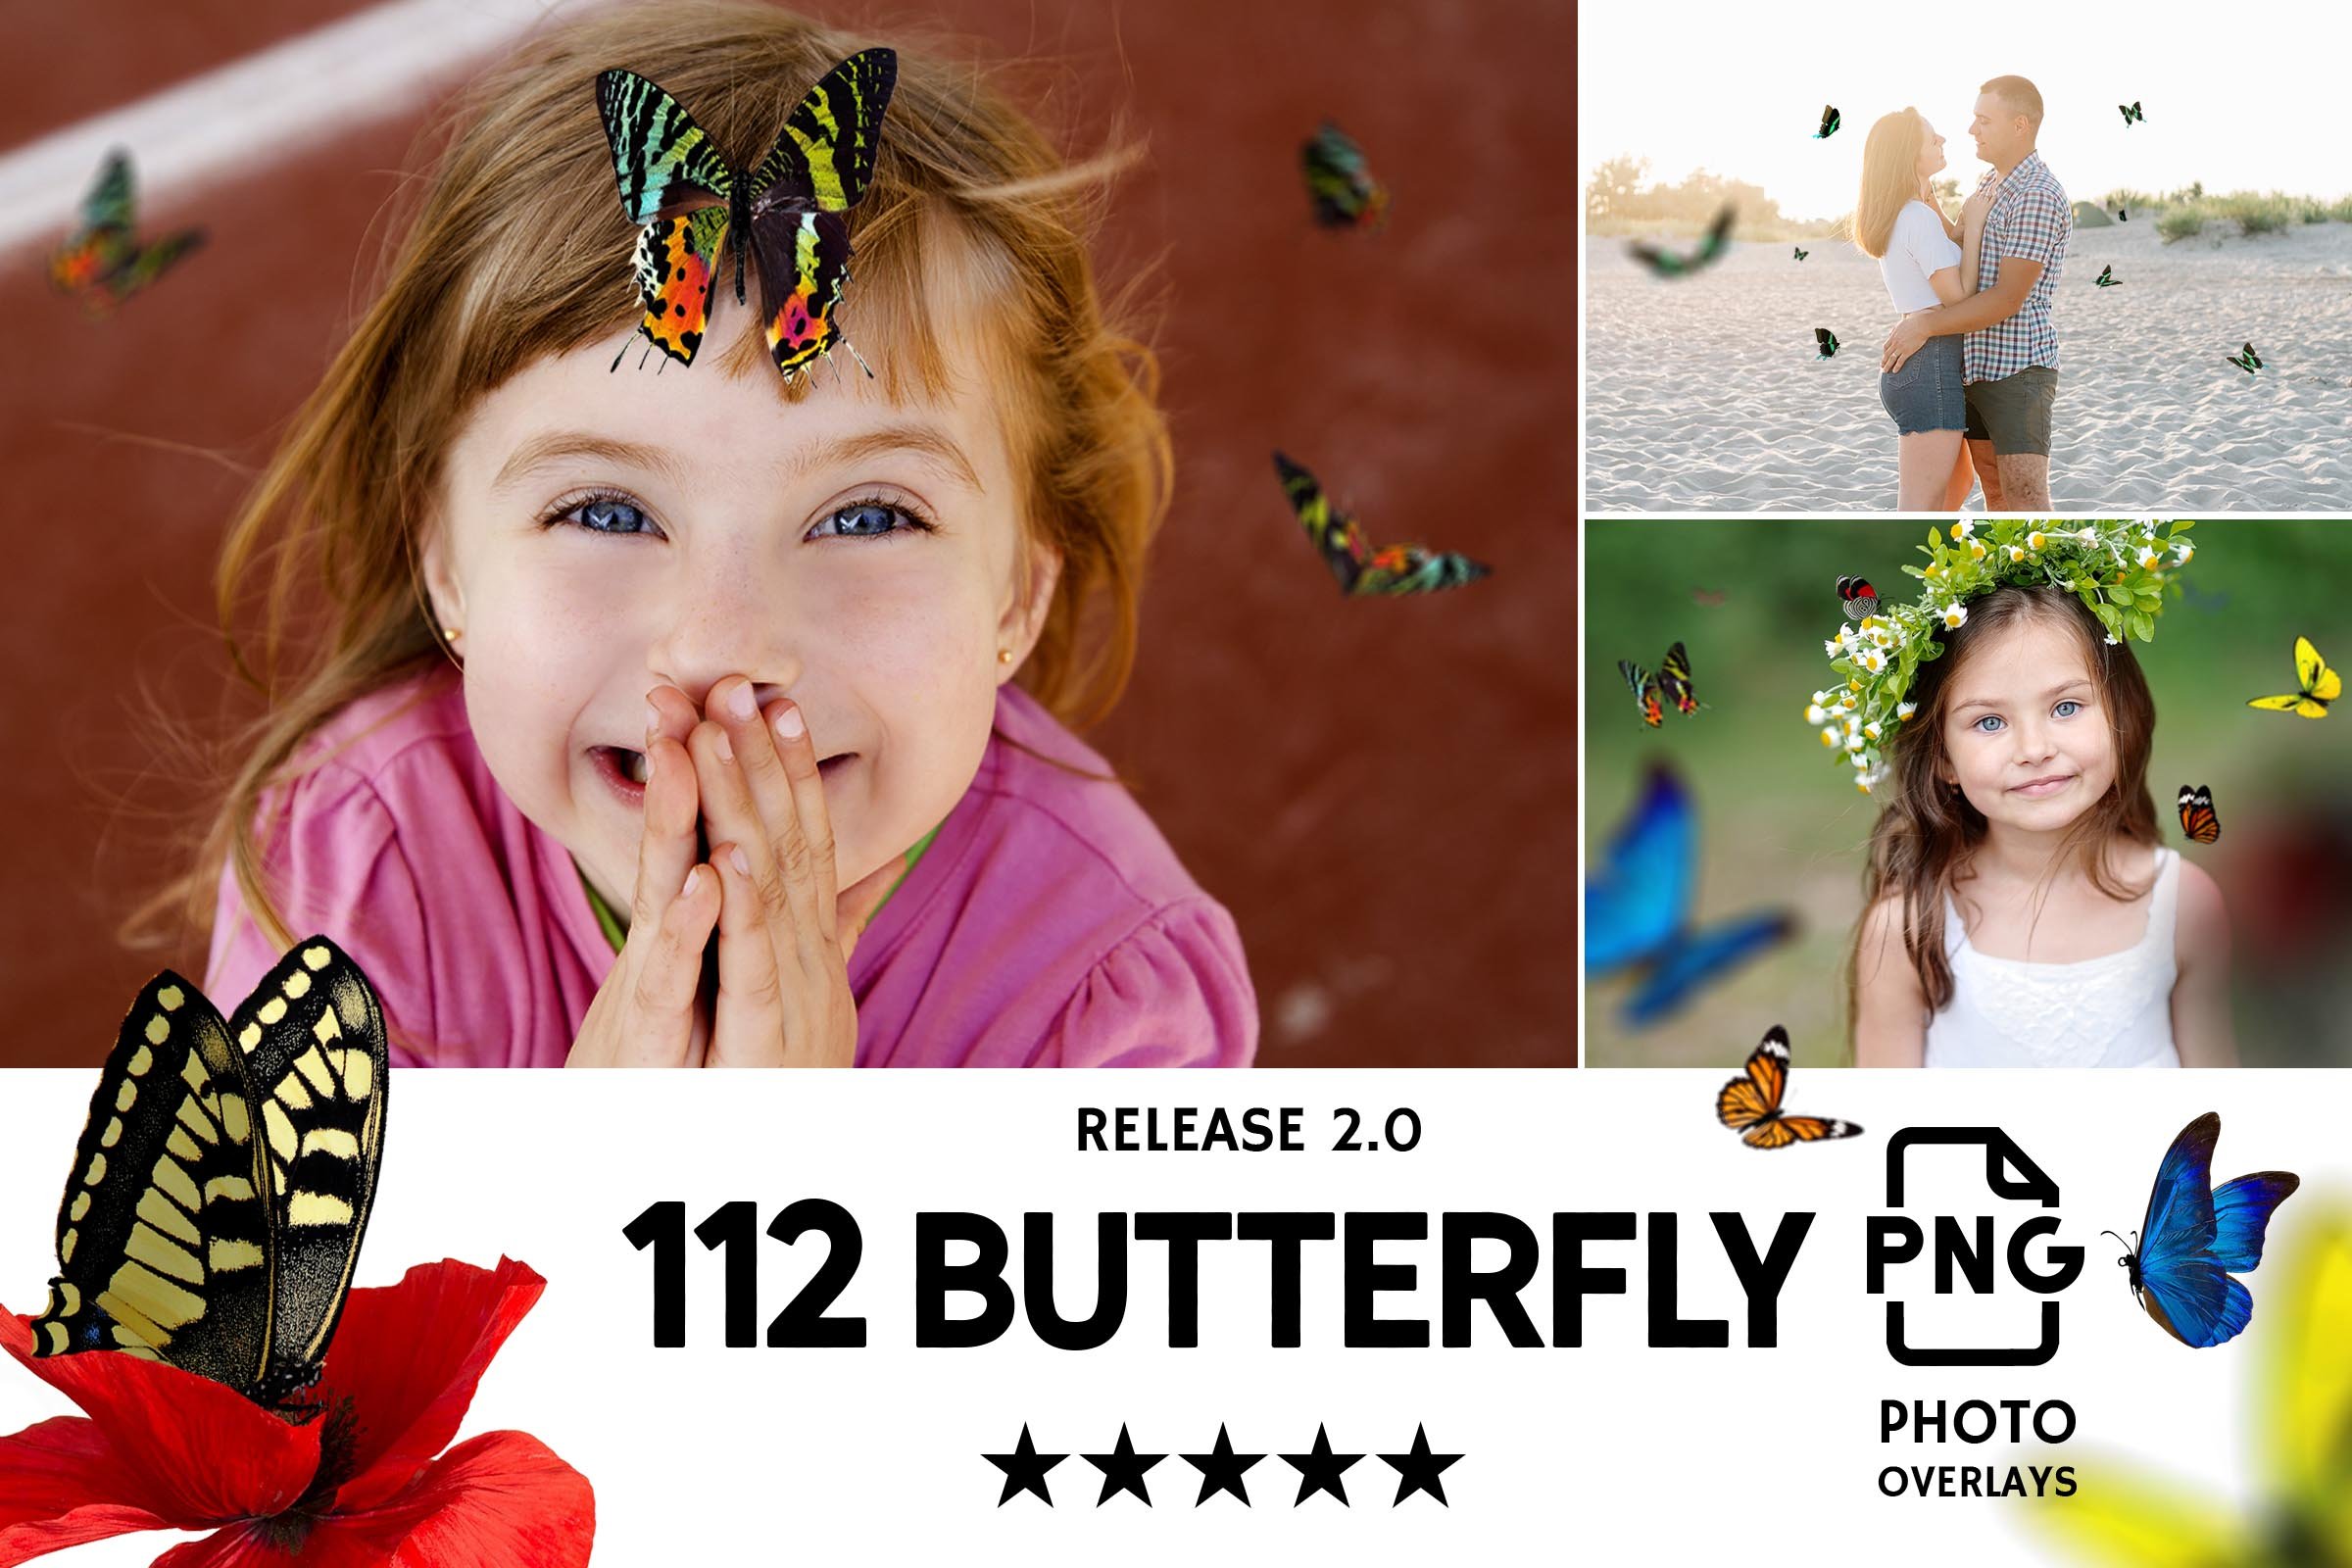 033. 112 butterflies 2.0 142